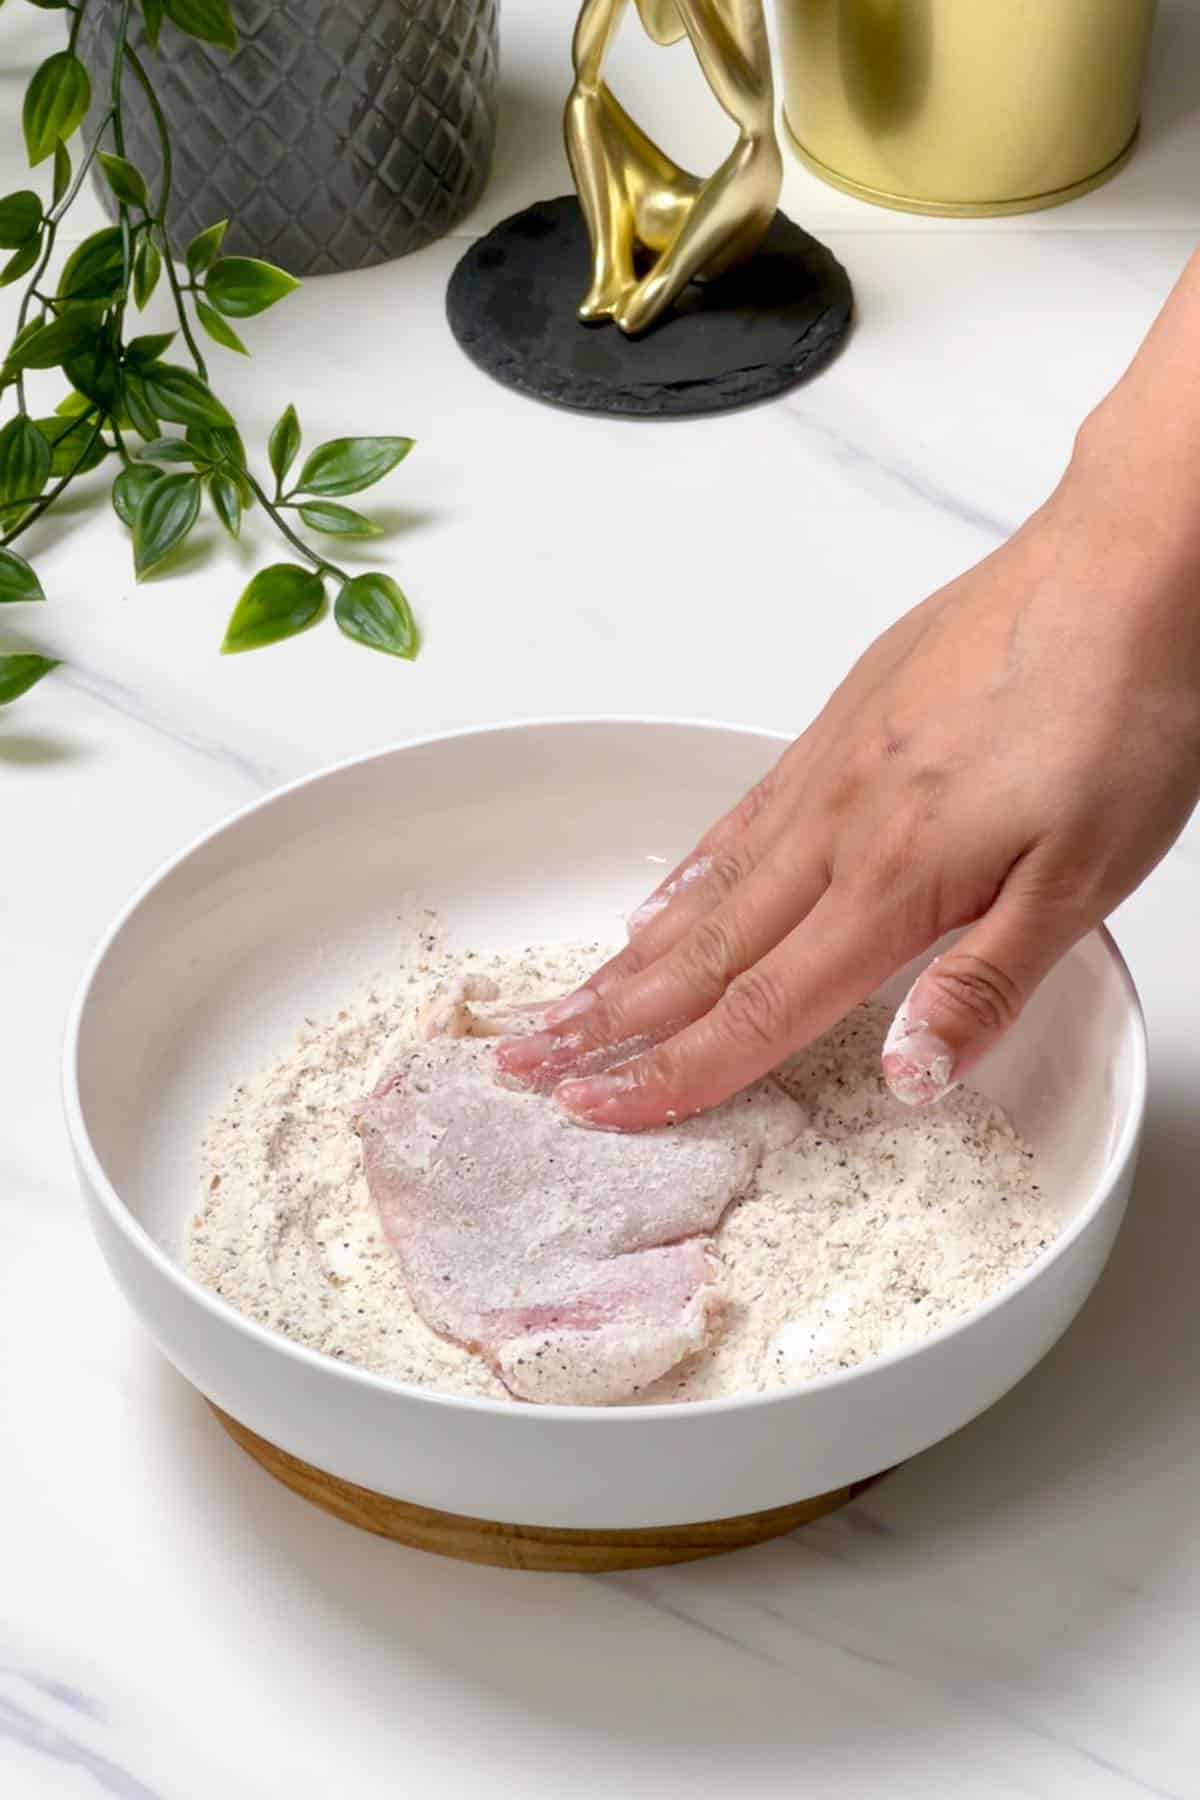 dredging chicken in the flour mixture